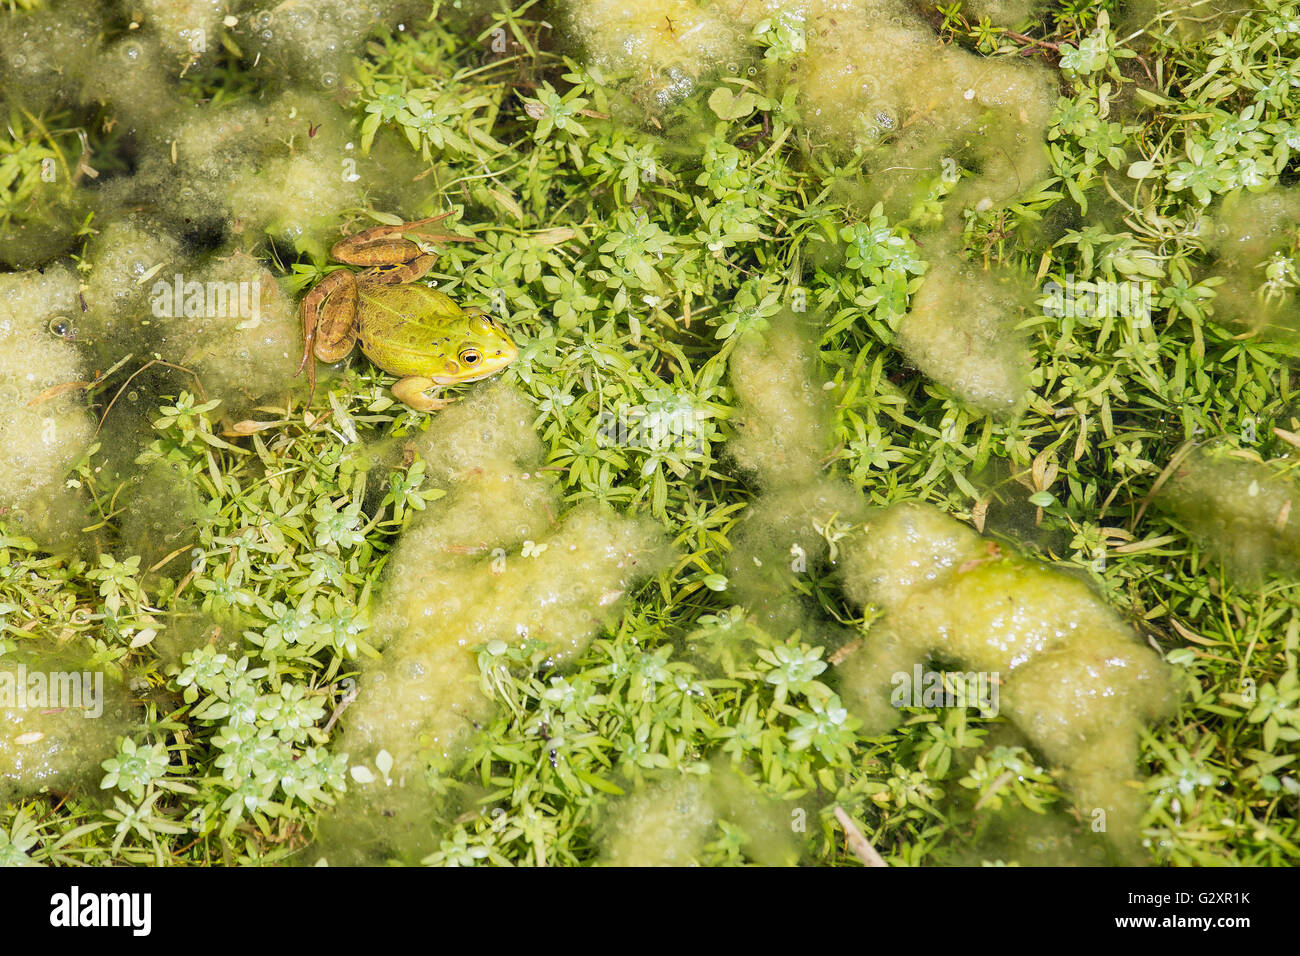 Un maschio di acqua comune rana verde, Pelophylax esculentus, flottante sulla vegetazione di un laghetto. Queste rane commestibili sono usati per foo Foto Stock